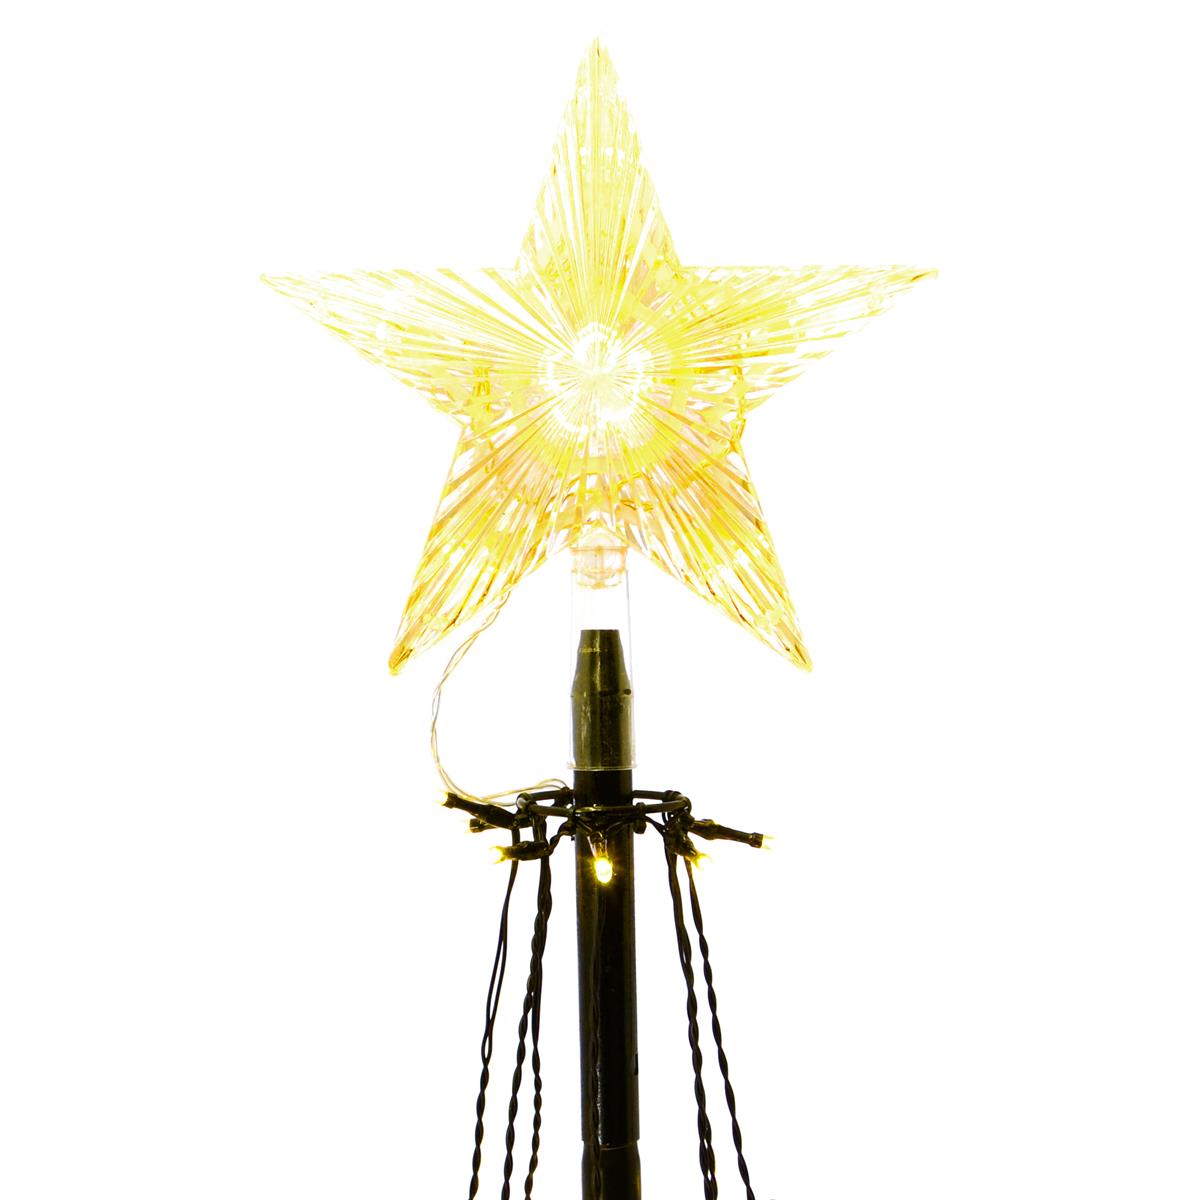 Günstiger Versand im Ausland Lichtpyramide 106 LED Baum Timer Trafo cm Stern mit 180 Xmas-Deko warmweiß